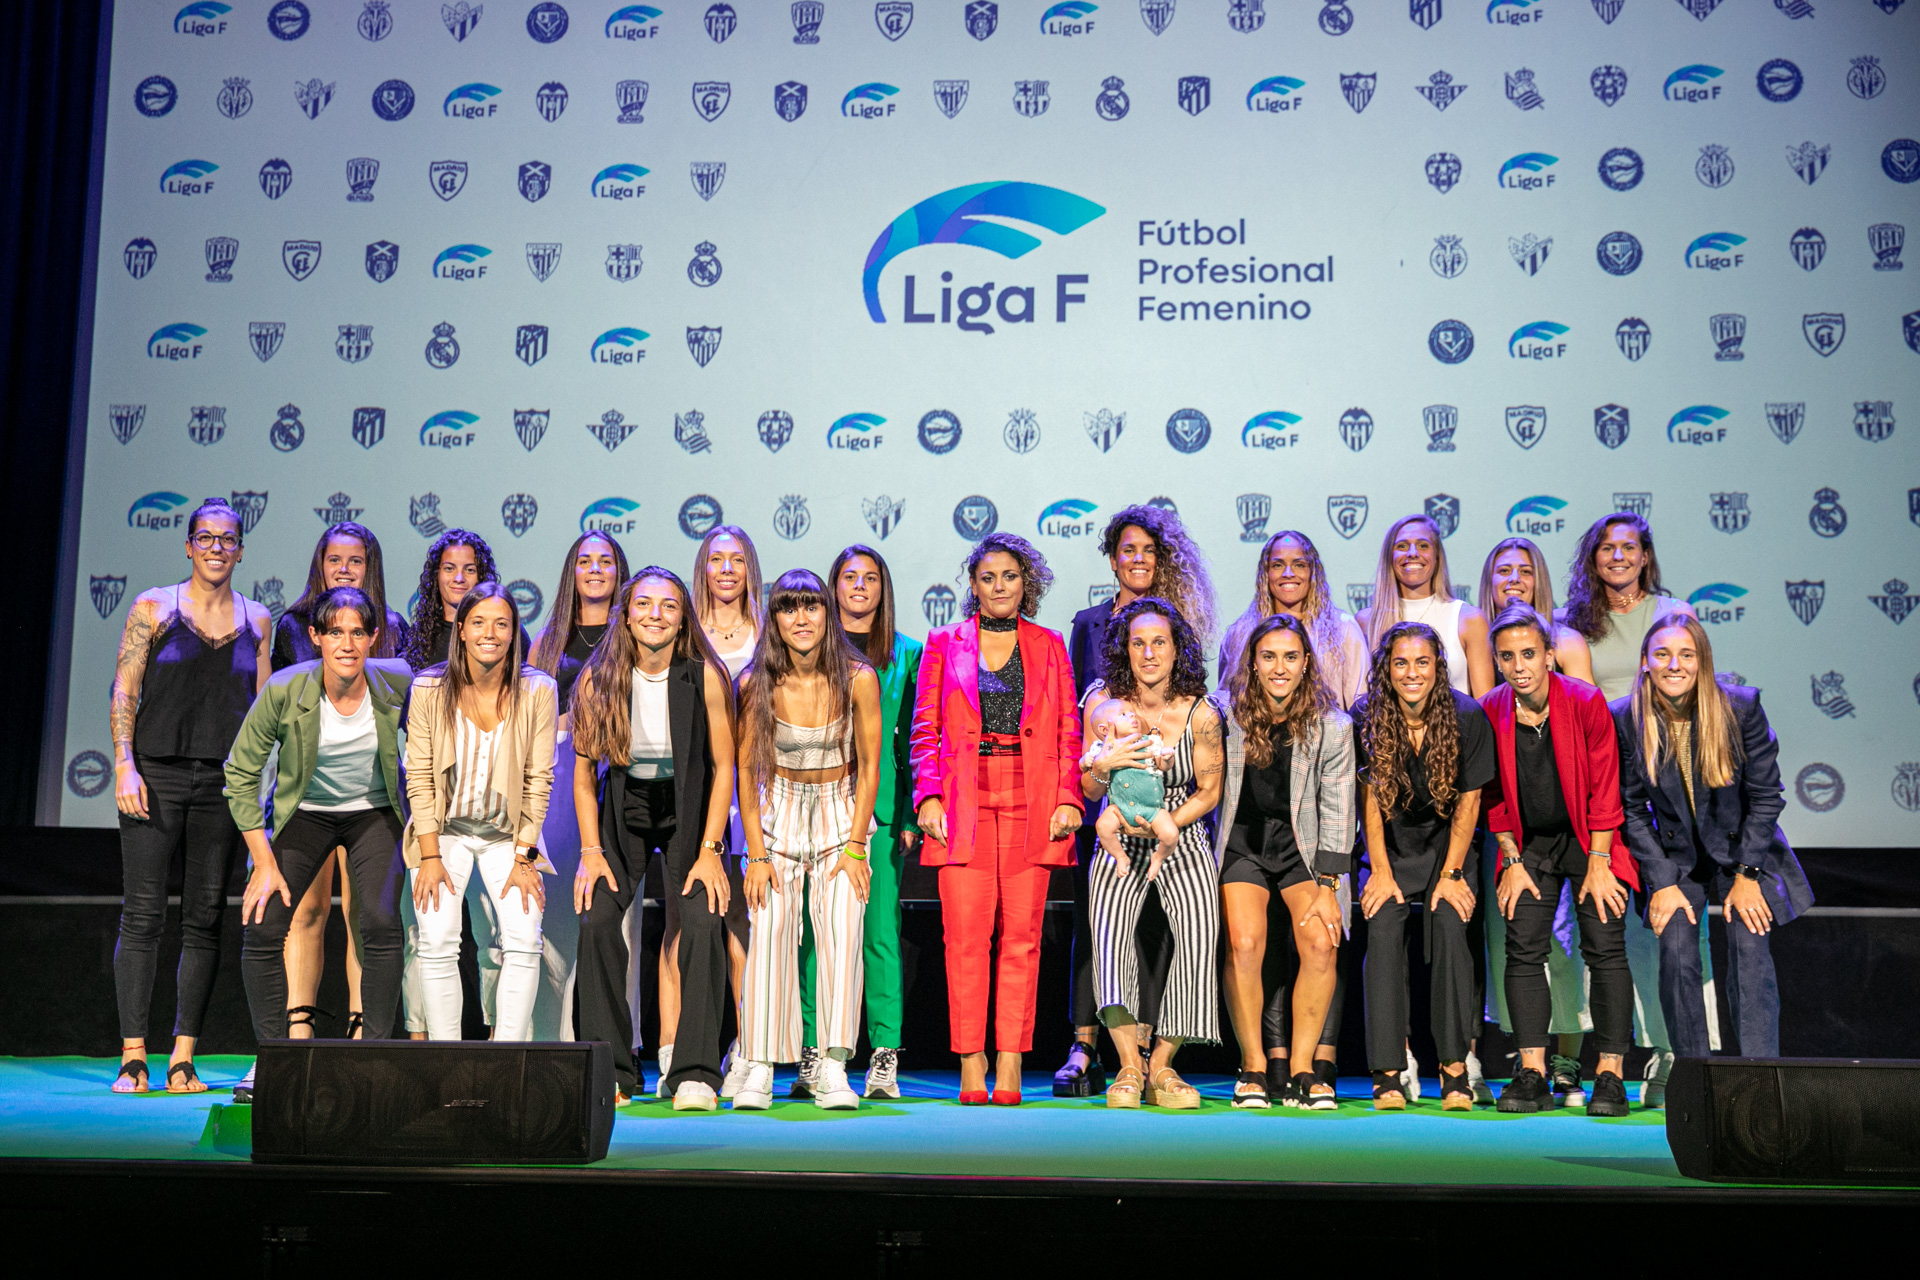 Nace la Liga F, nueva identidad de marca del Fútbol Profesional Femenino